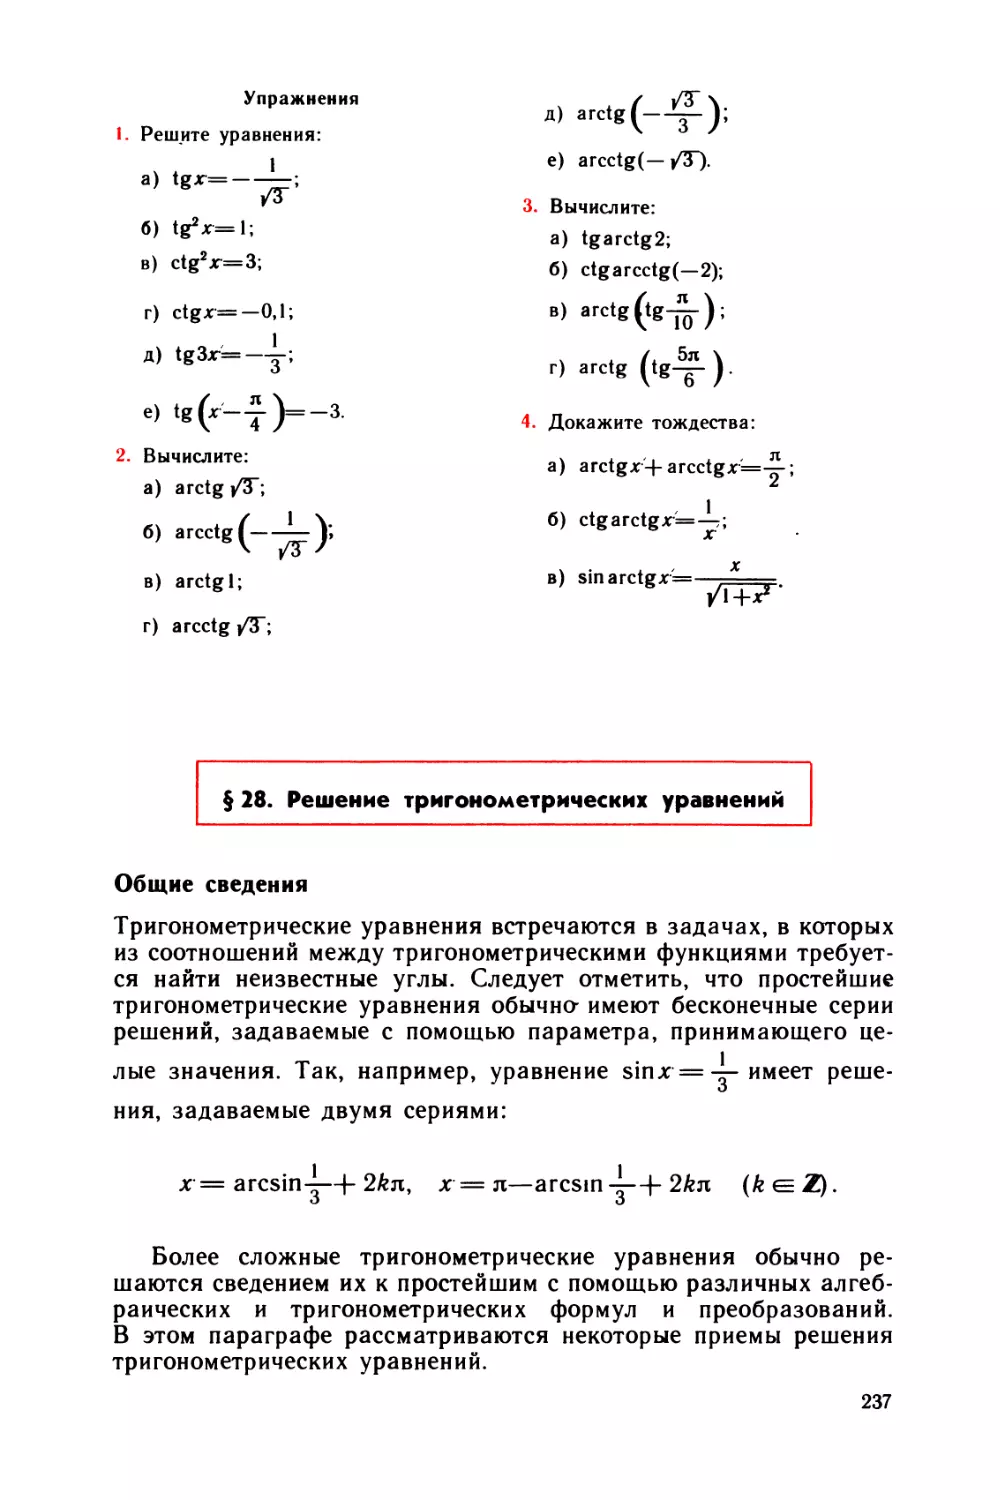 § 28 Решение тригонометрических уравнений